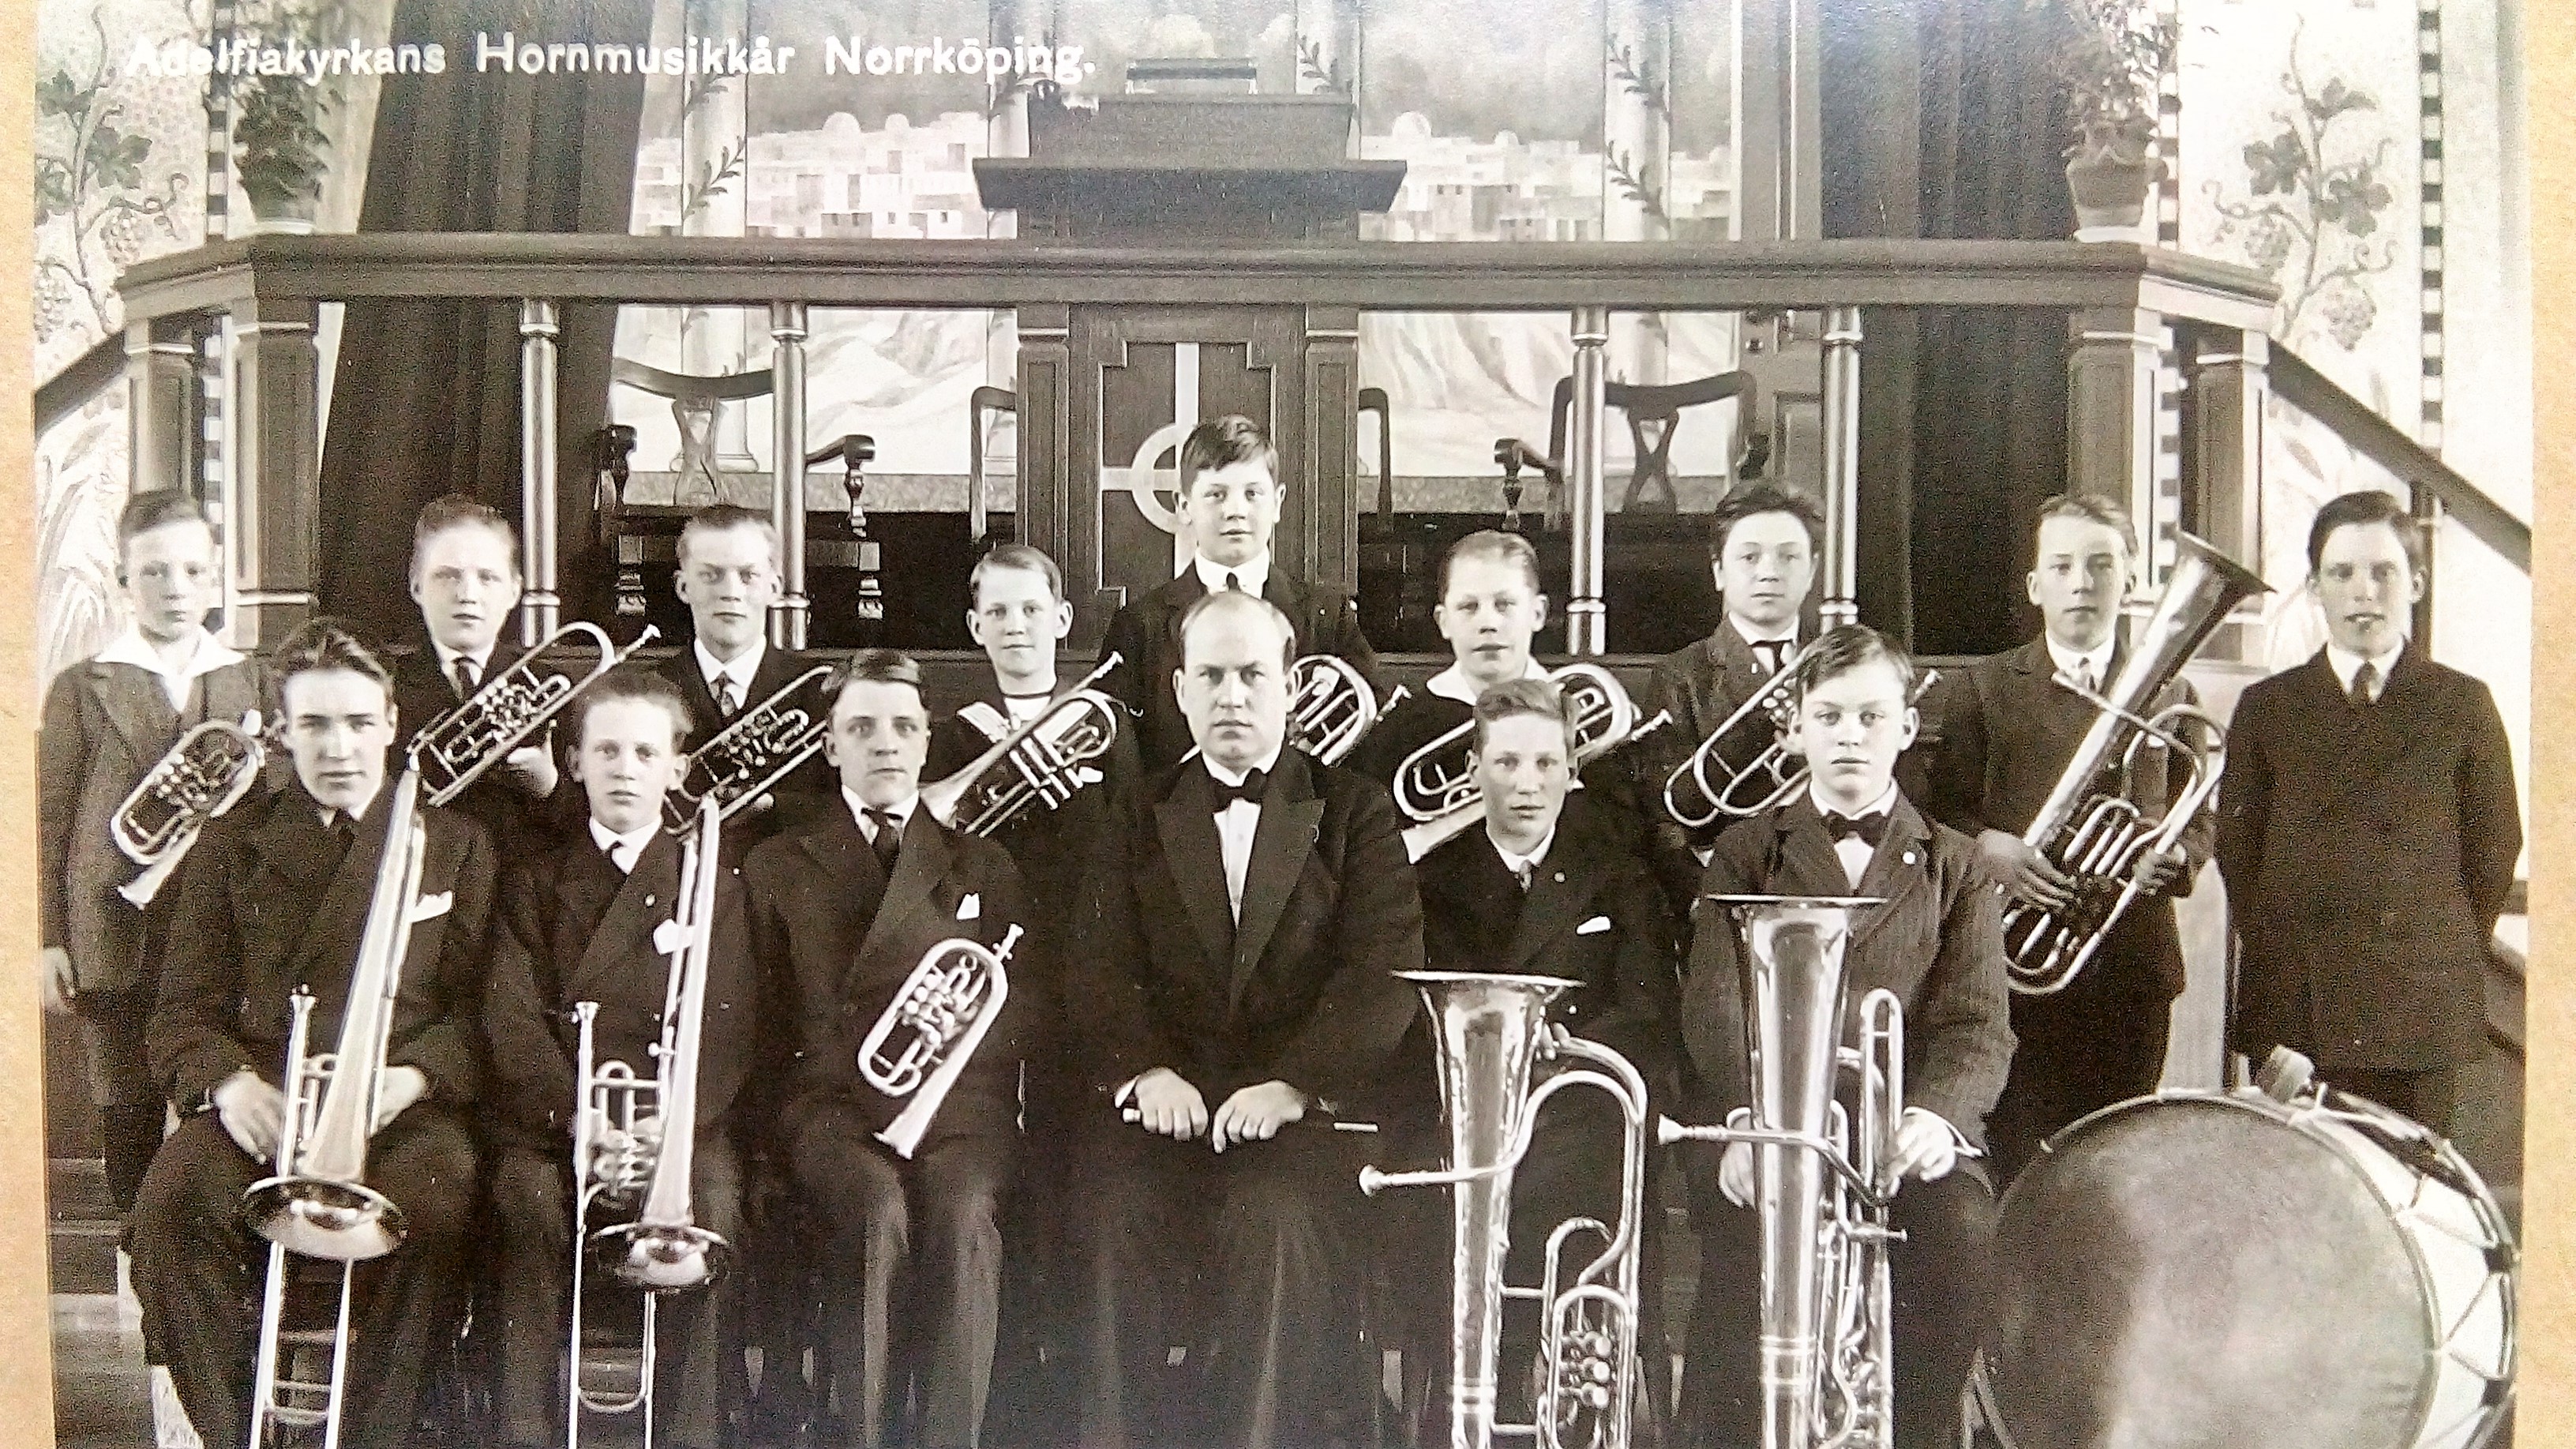 1941-Adelfiakyrkans-hornmusikkar.jpg